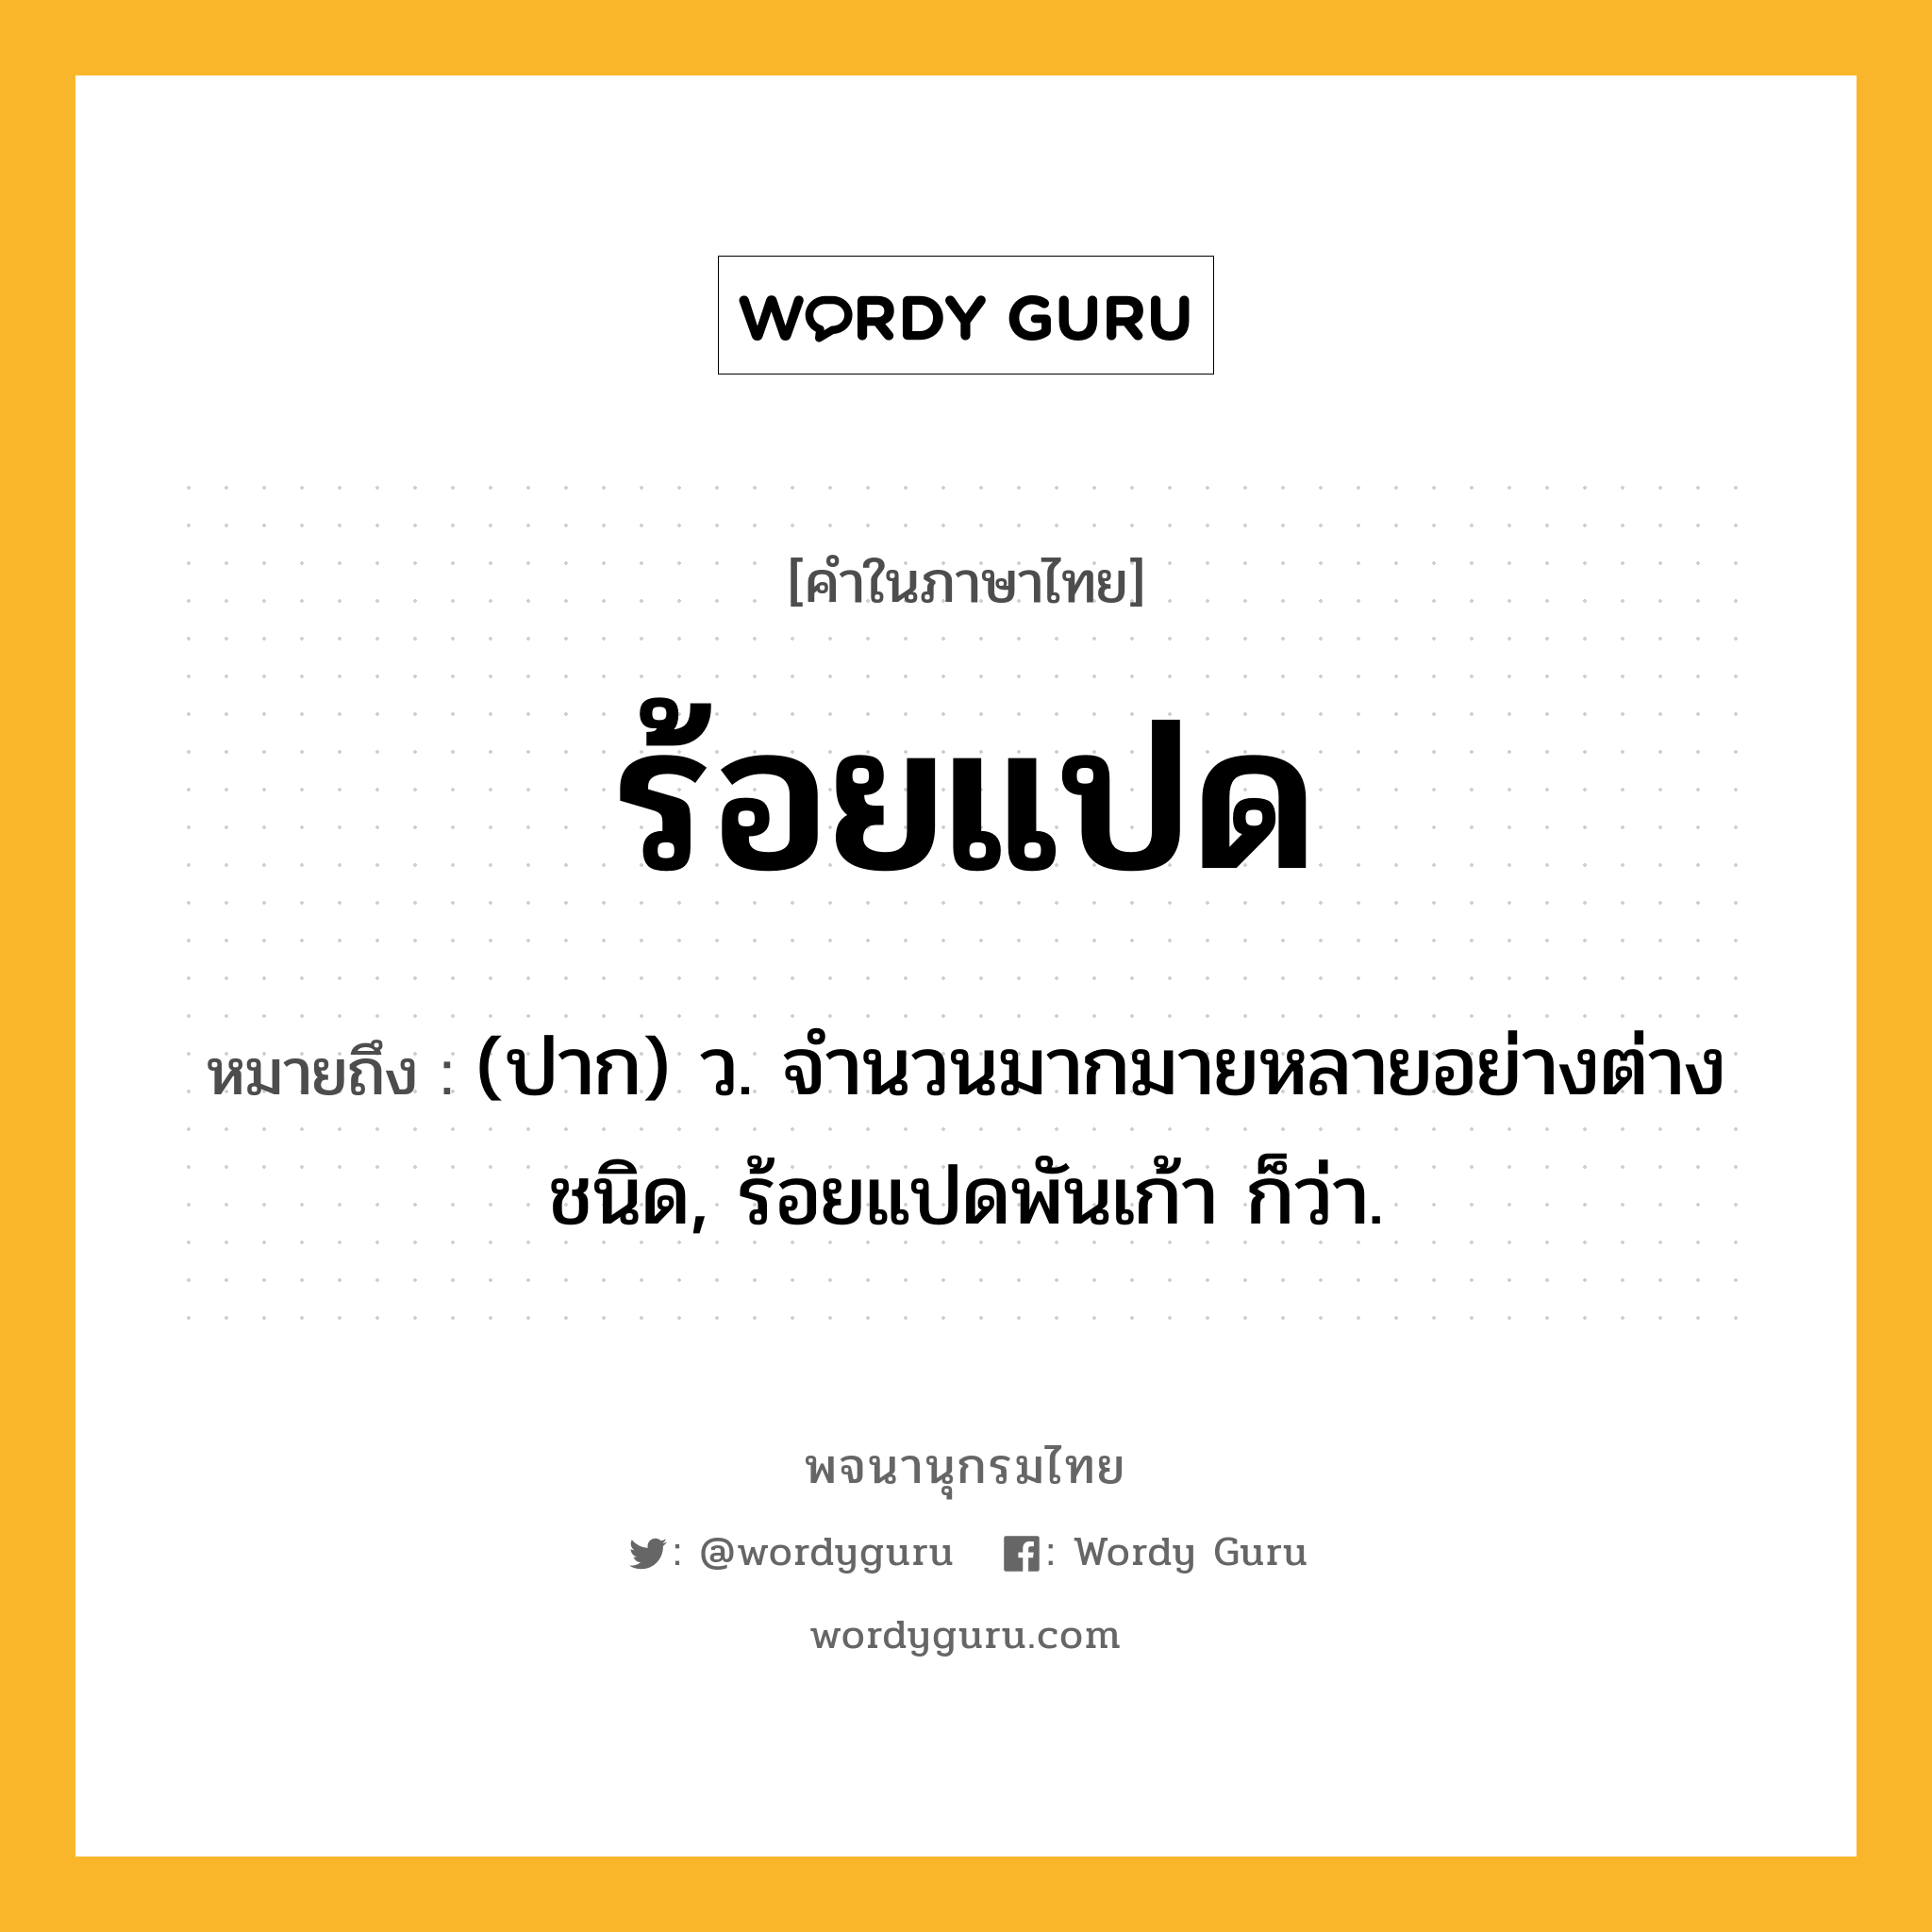 ร้อยแปด หมายถึงอะไร?, คำในภาษาไทย ร้อยแปด หมายถึง (ปาก) ว. จํานวนมากมายหลายอย่างต่างชนิด, ร้อยแปดพันเก้า ก็ว่า.